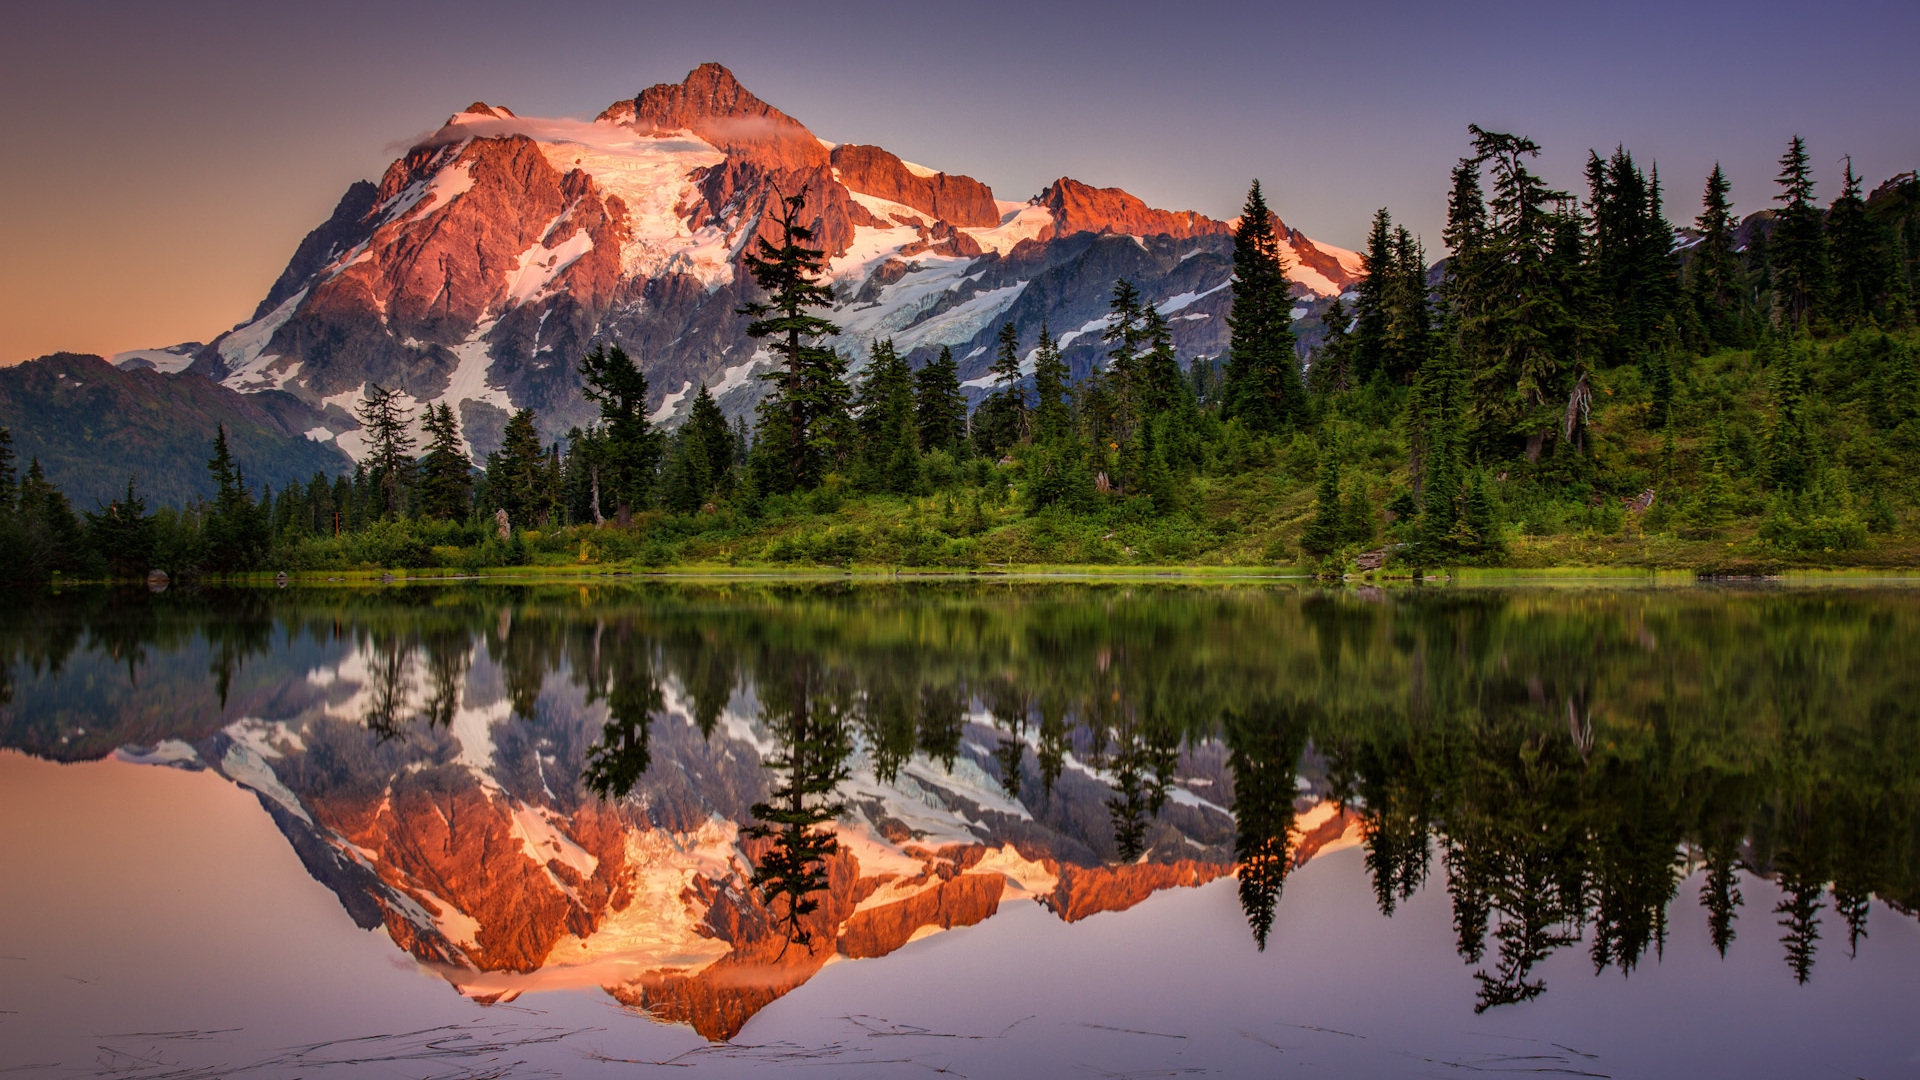 Superb Lake Reflection Landscape for 1920 x 1080 HDTV 1080p resolution